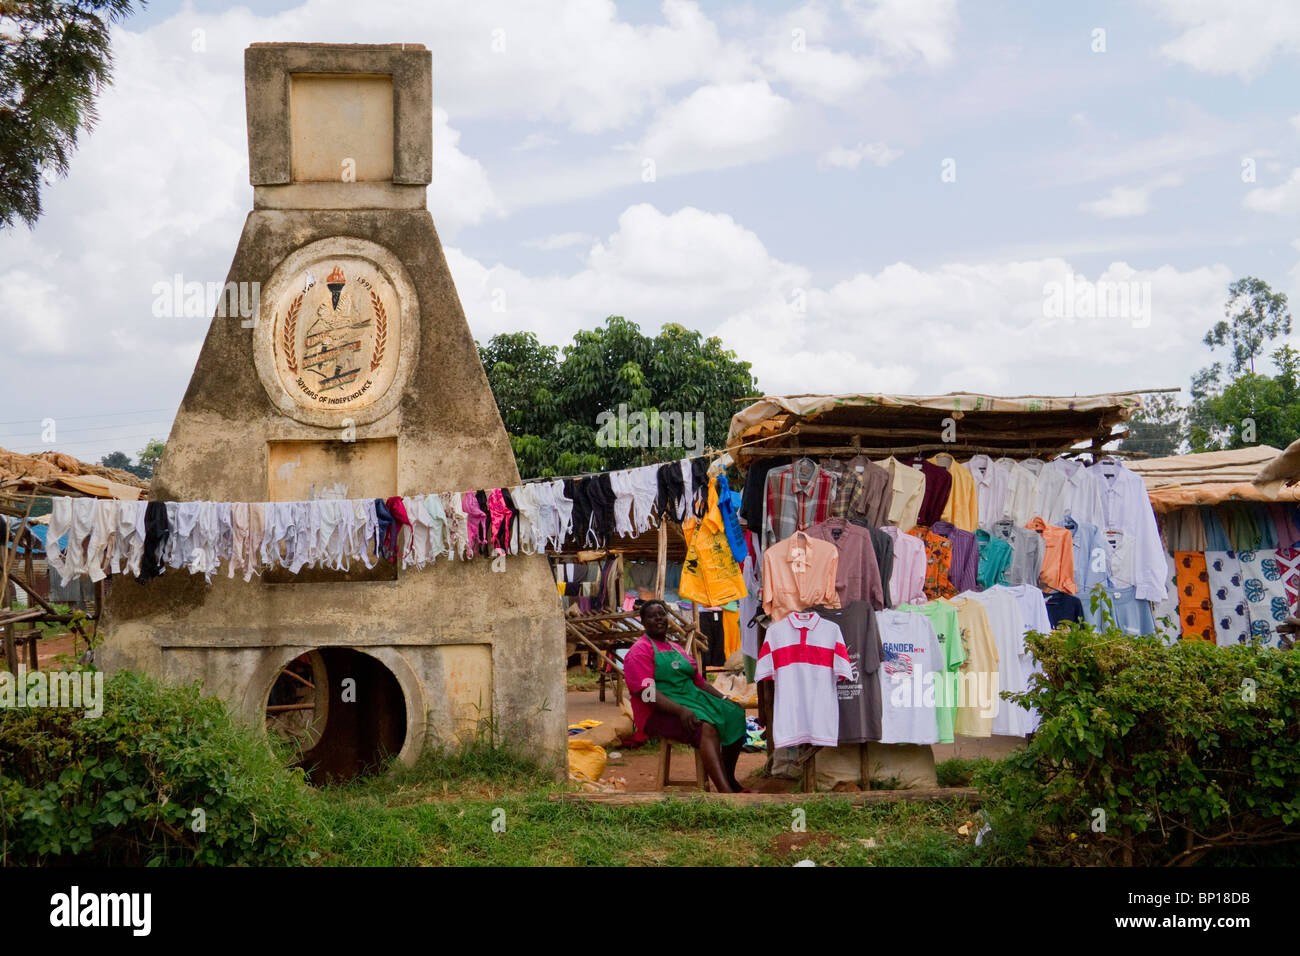 A rural flea market in western Kenya. Stock Photo